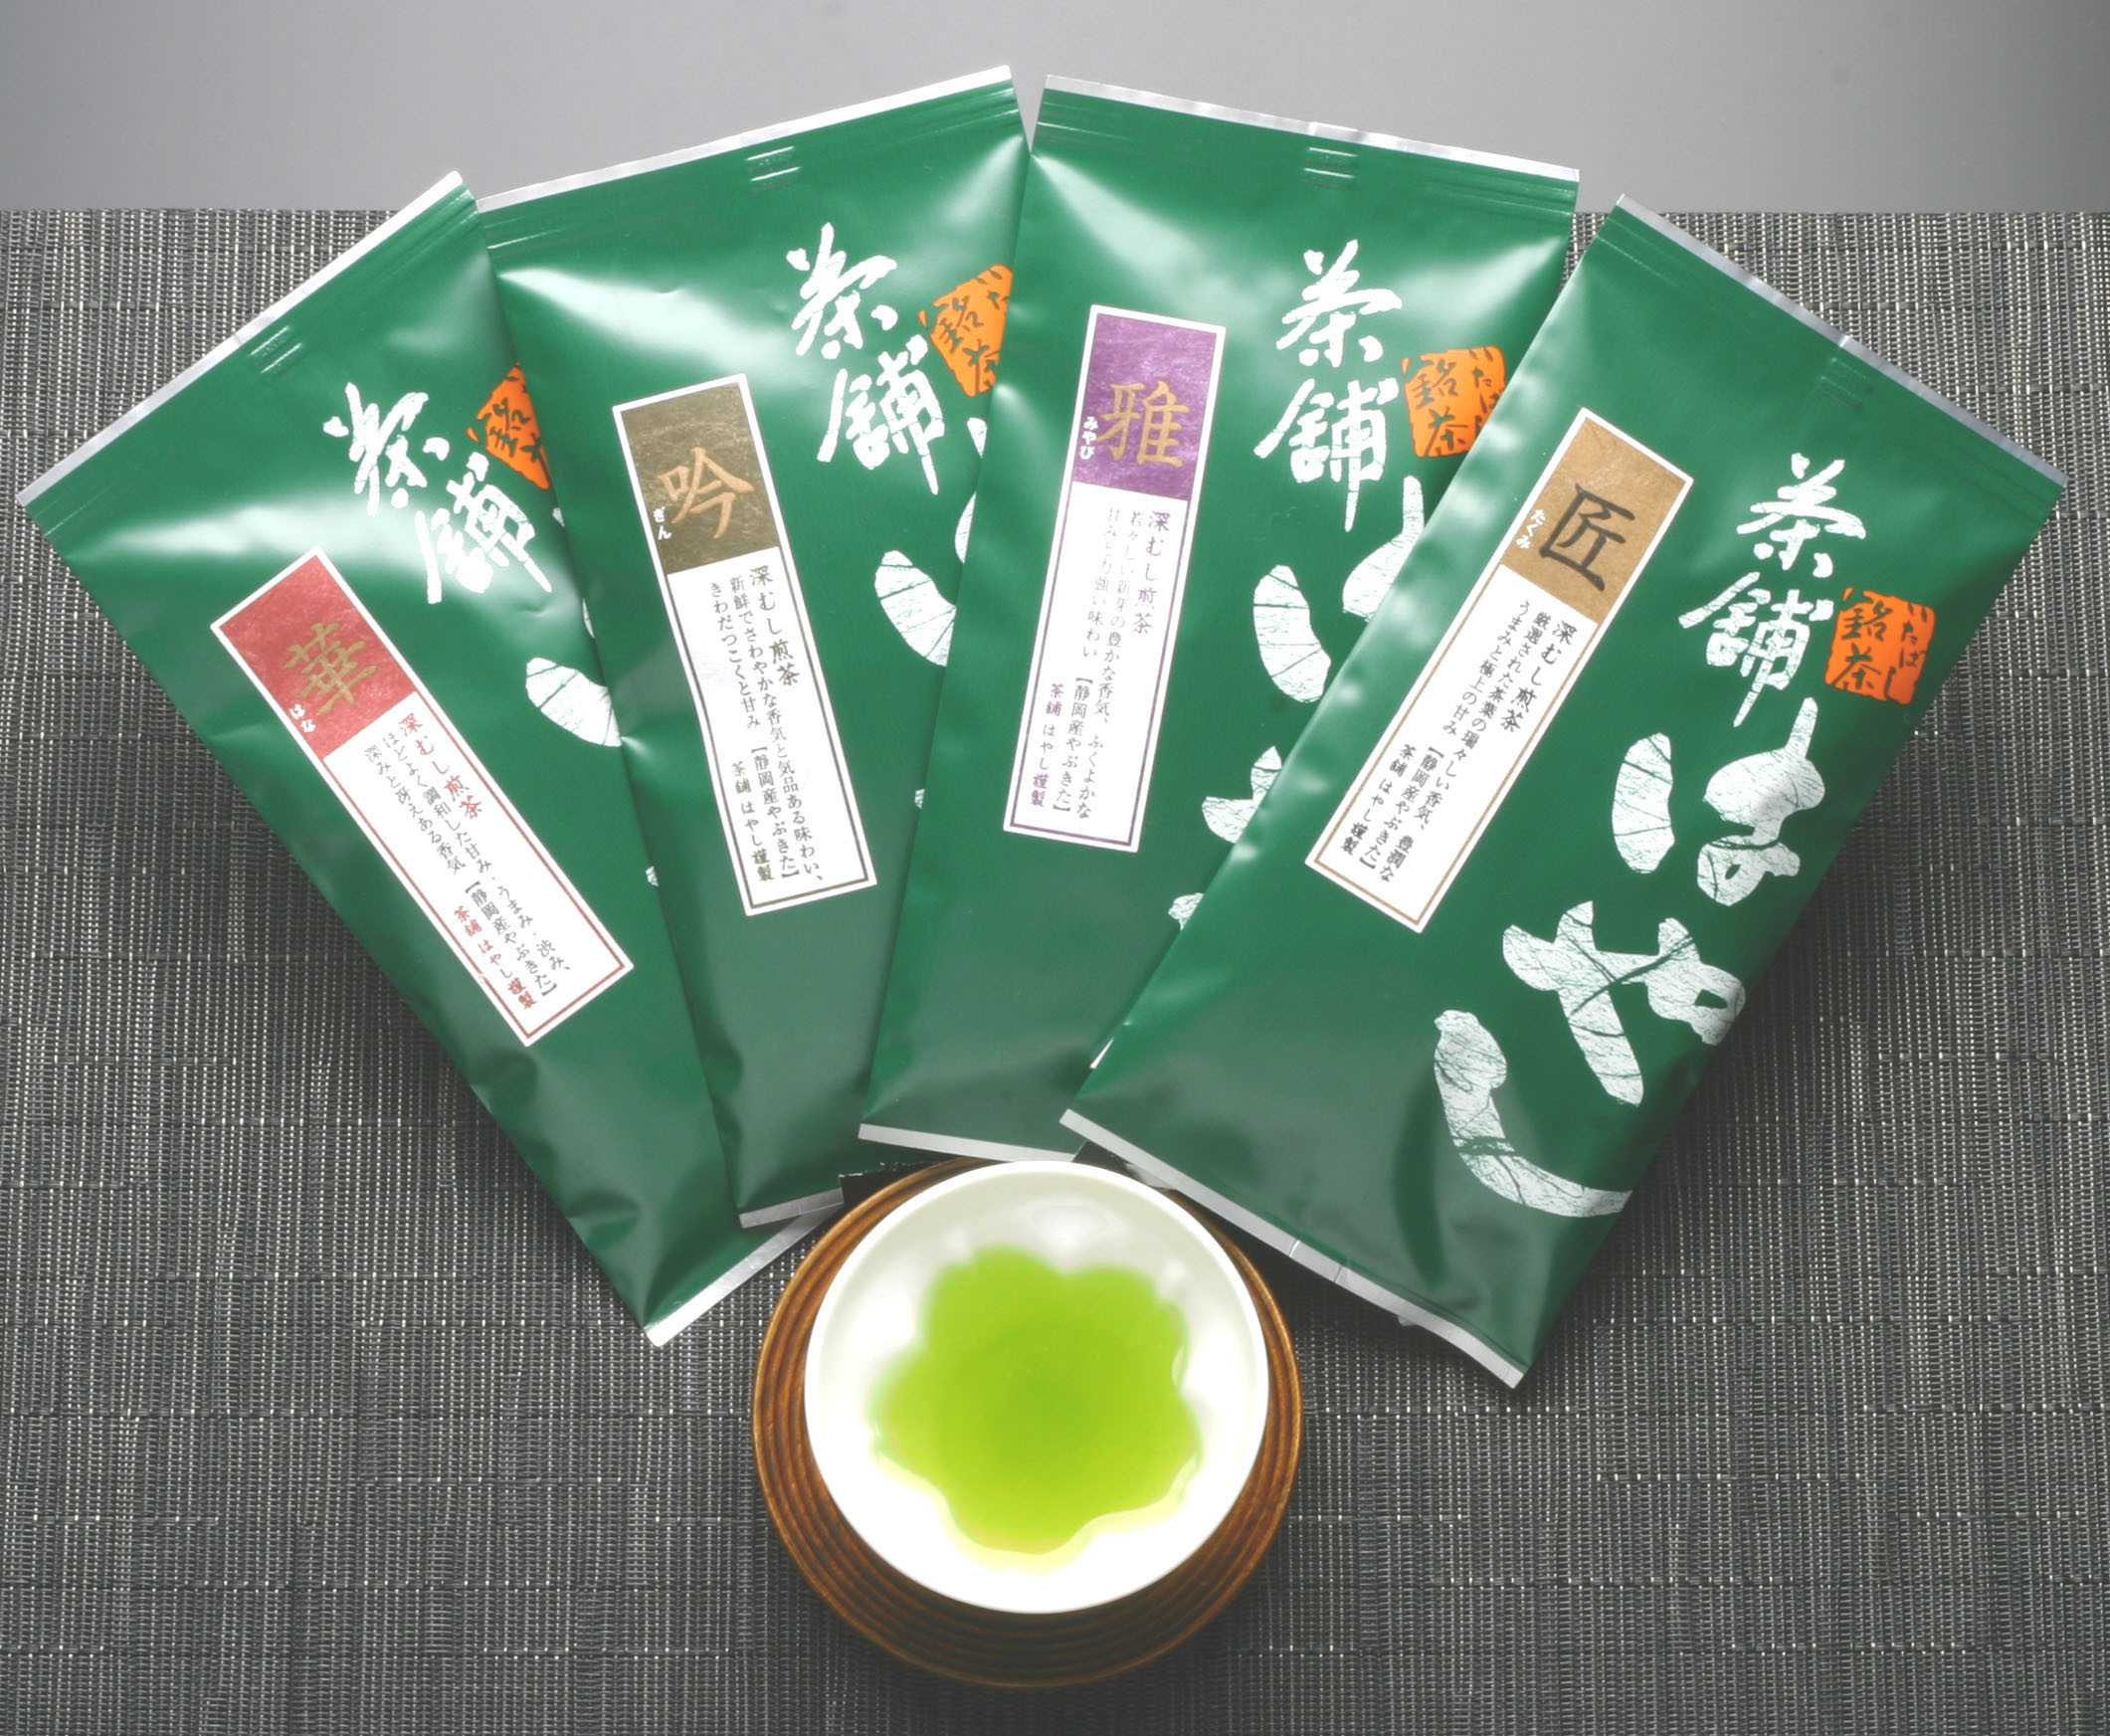 静岡県産の深むし煎茶を中心にさまざまな産地、種類のお茶を取り揃えております。